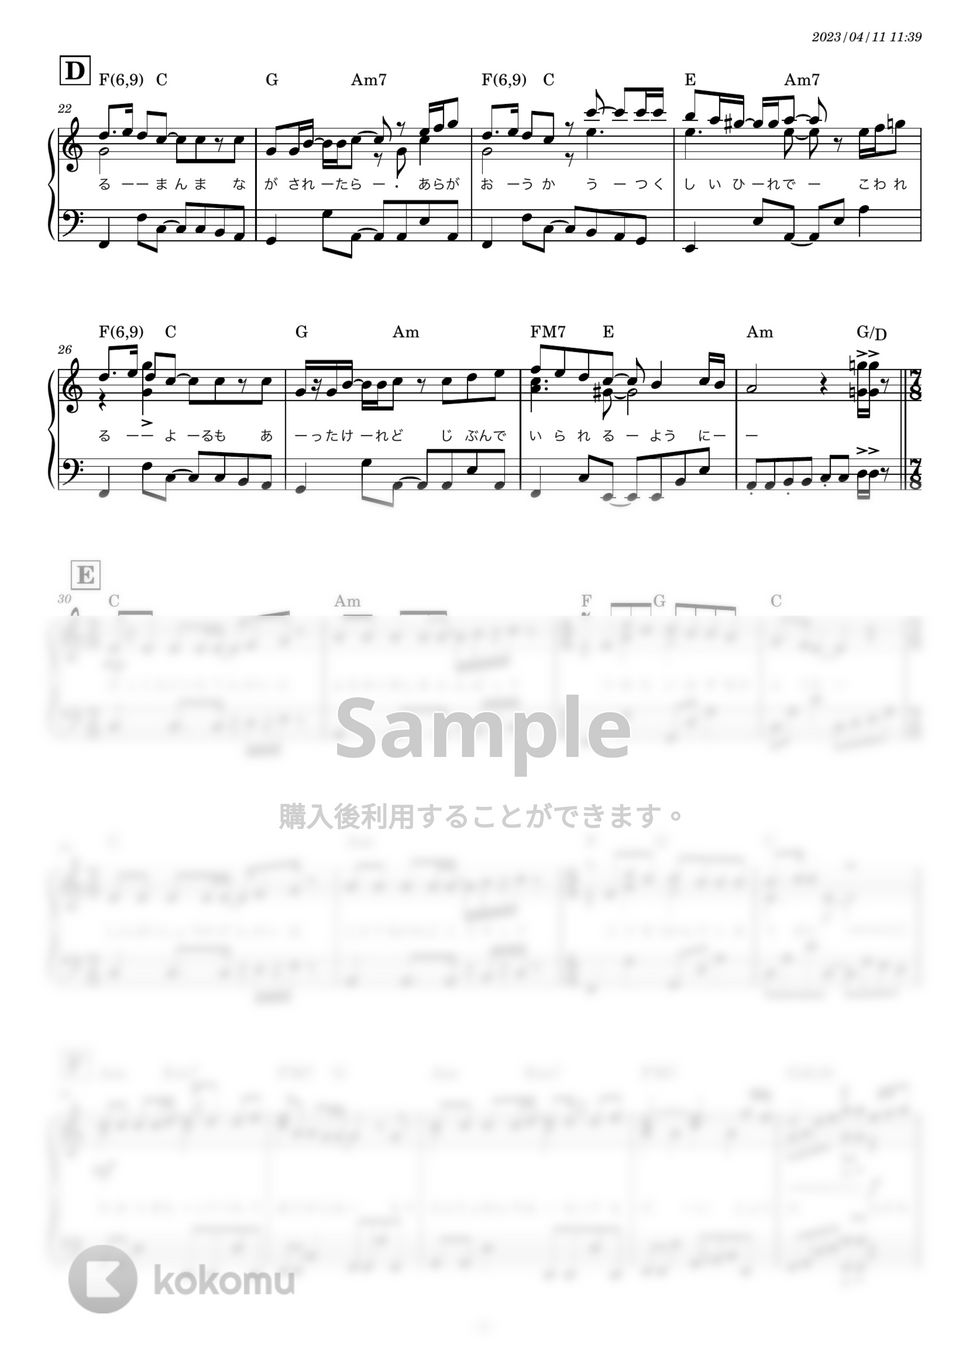 スピッツ - 美しい鰭 (キー-1 Cメジャー やや簡単ピアノソロ) by 糸川瑞樹